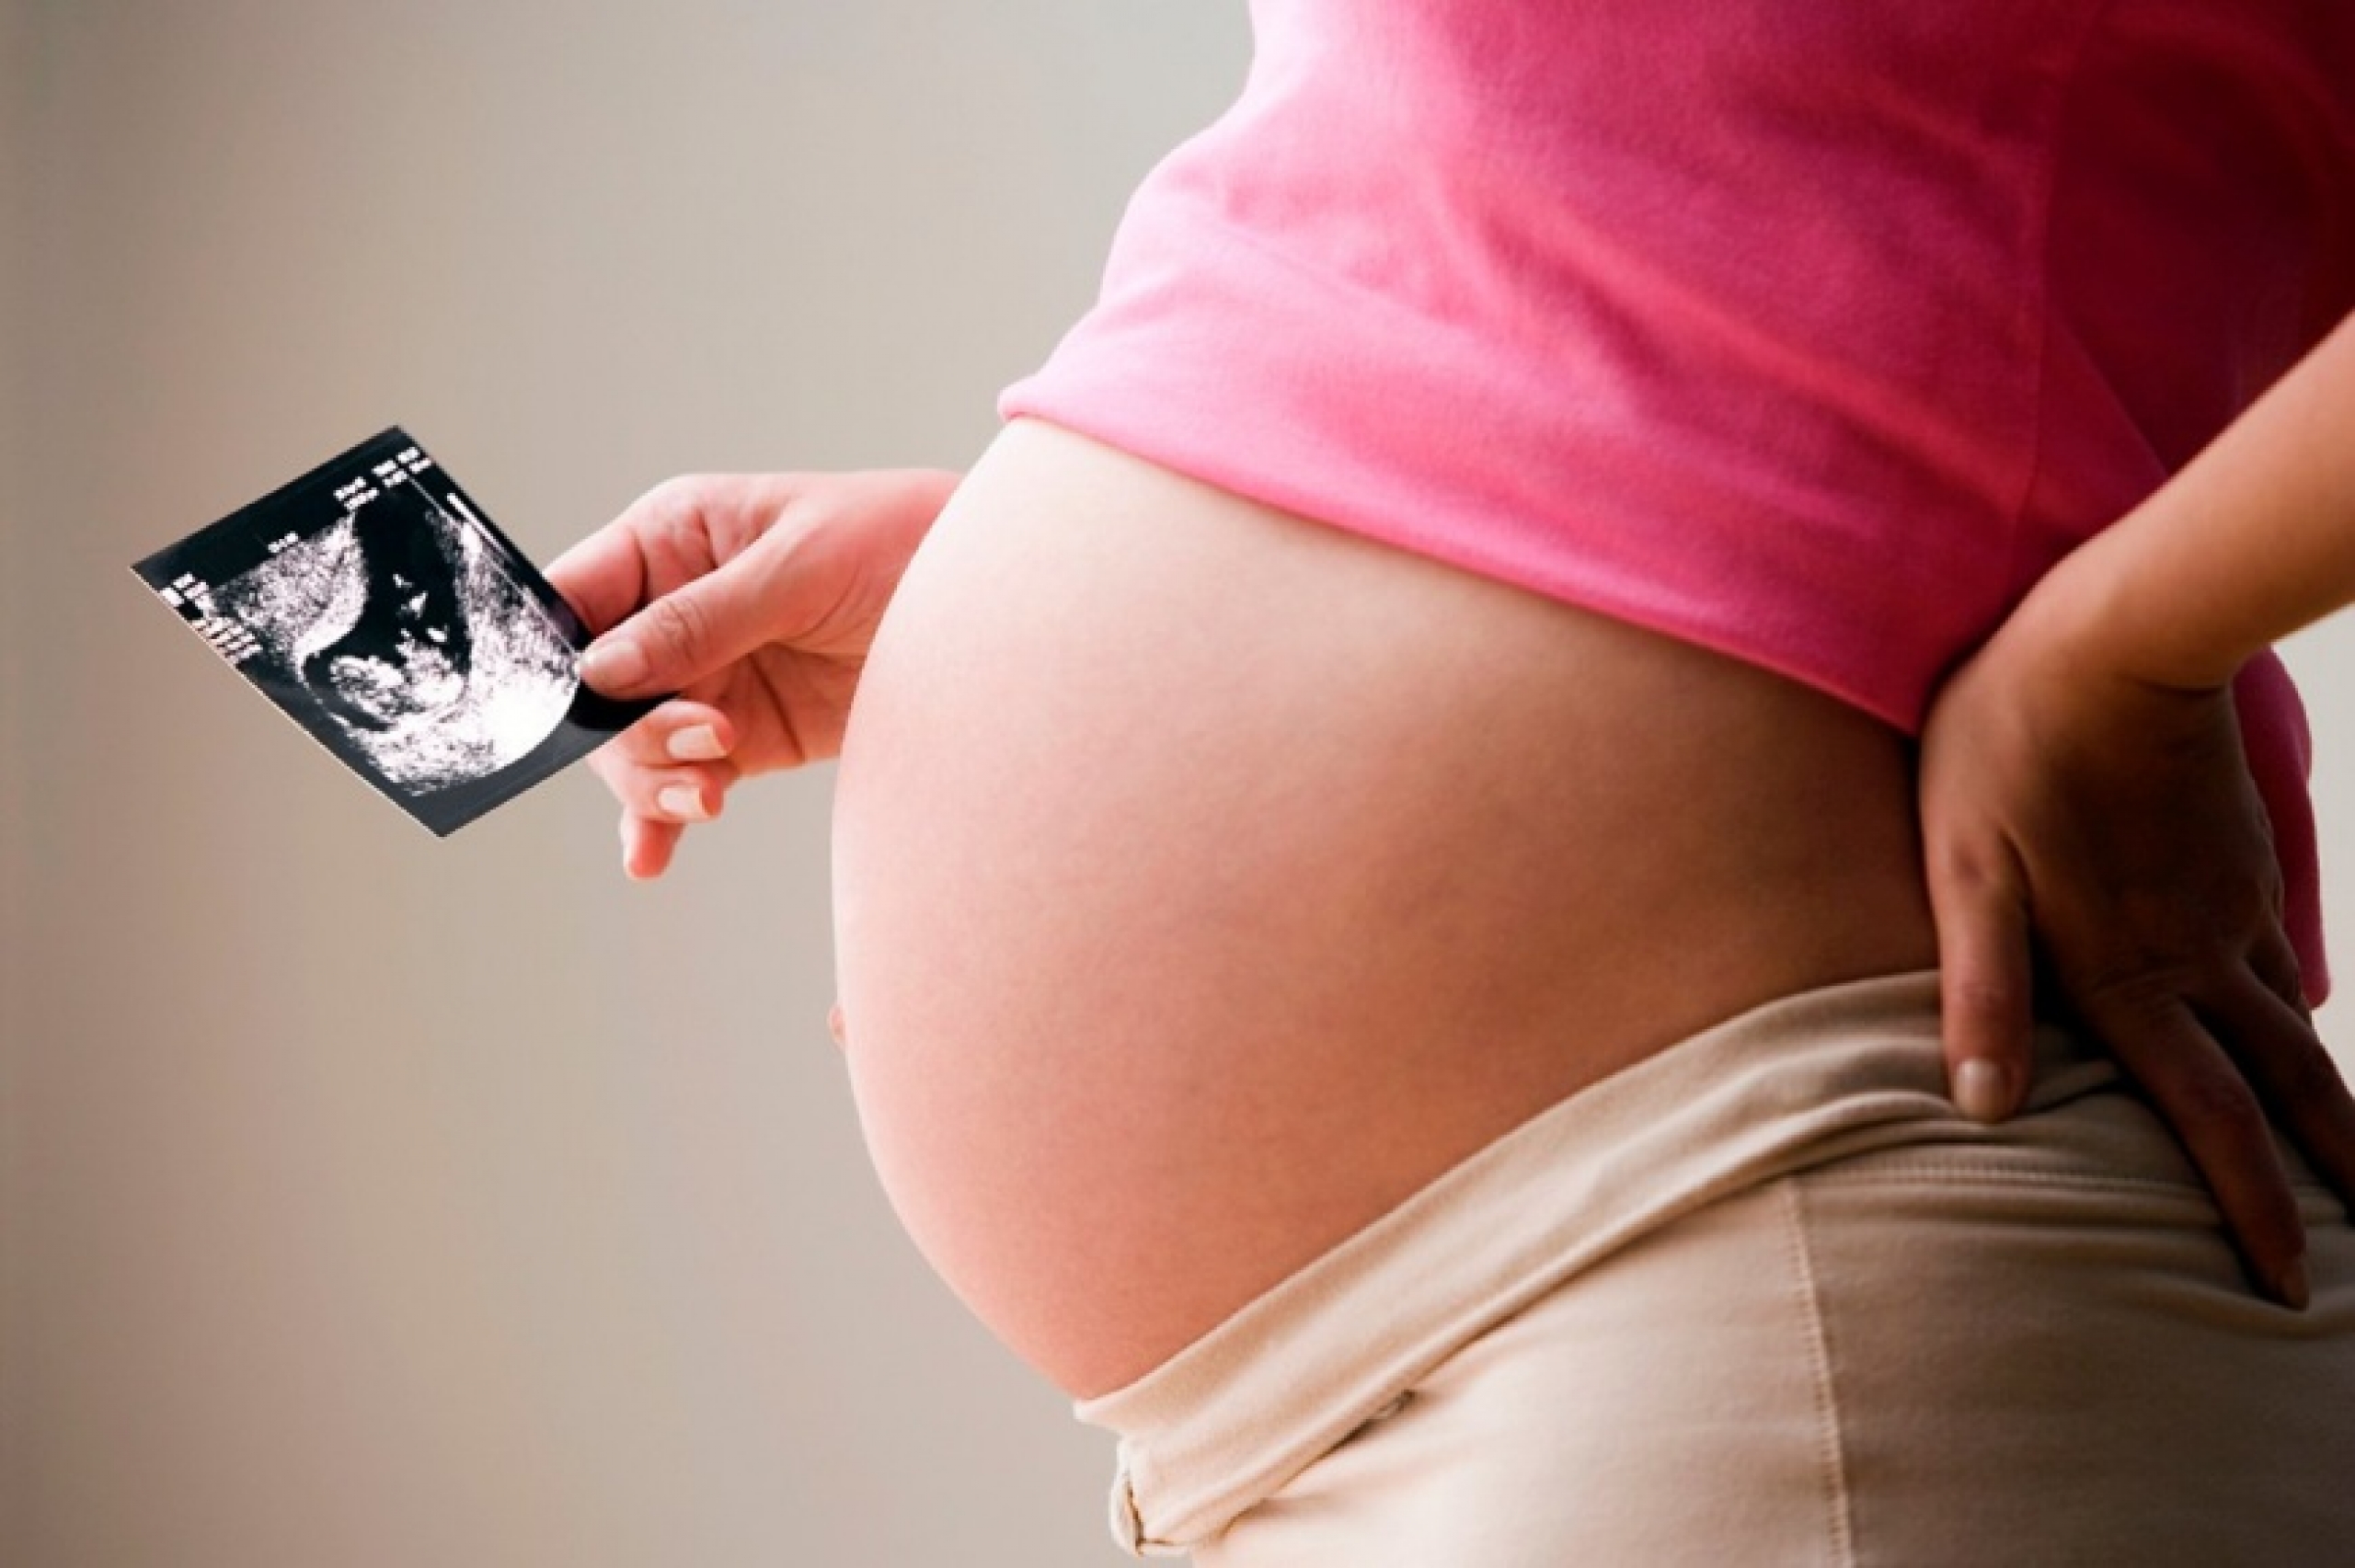 Краснуха при беременности: как распознать и что делать дальше